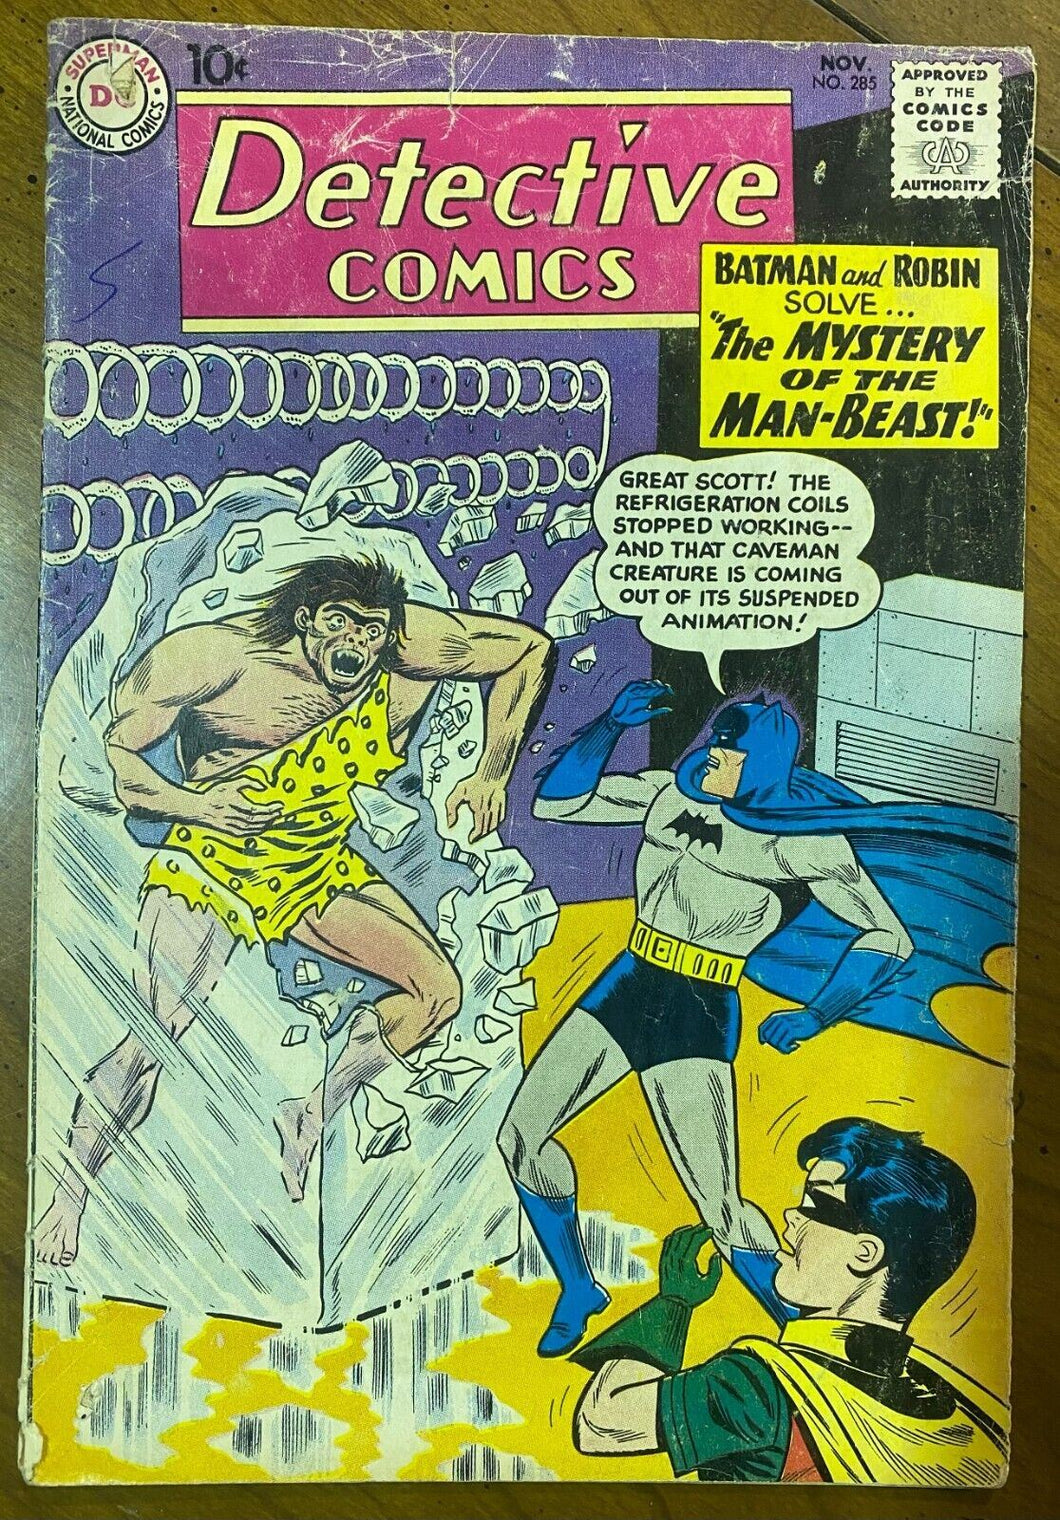 1960 Detective Comics Issue 285